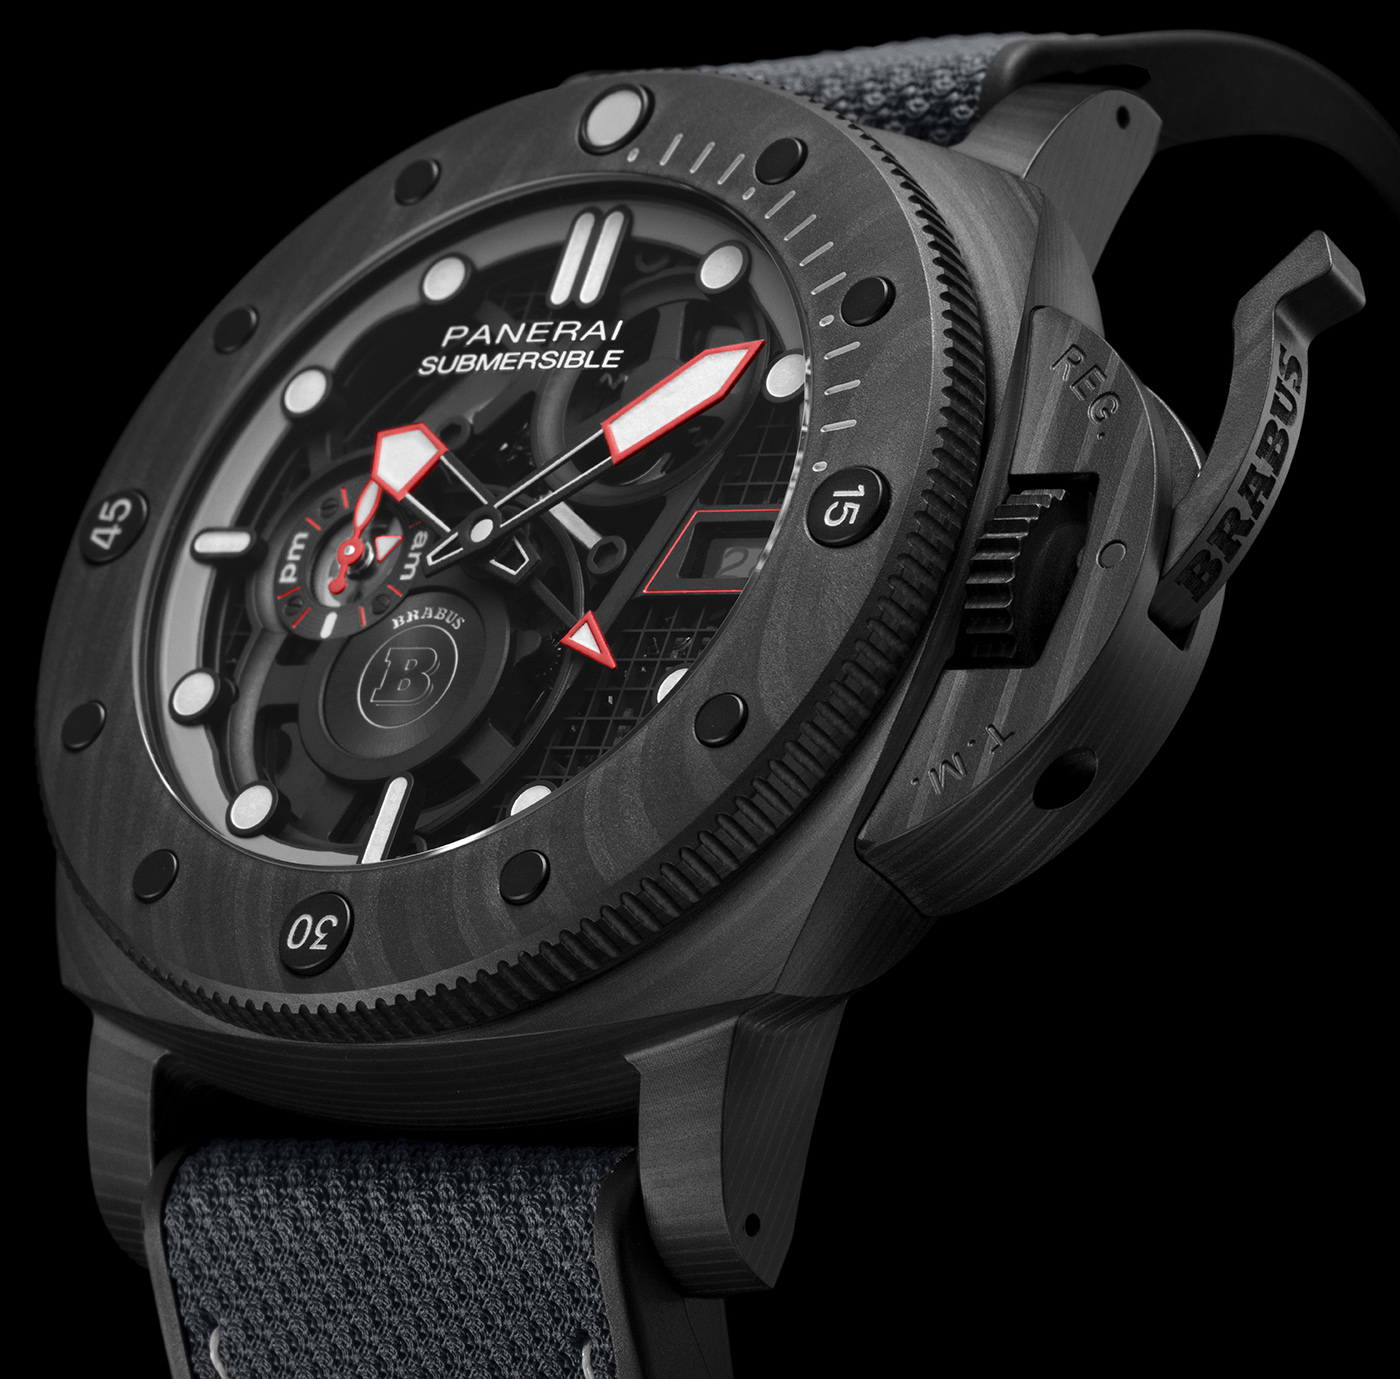 Panerai выпускает лимитированные дайверские часы S BRABUS Black Ops Edition